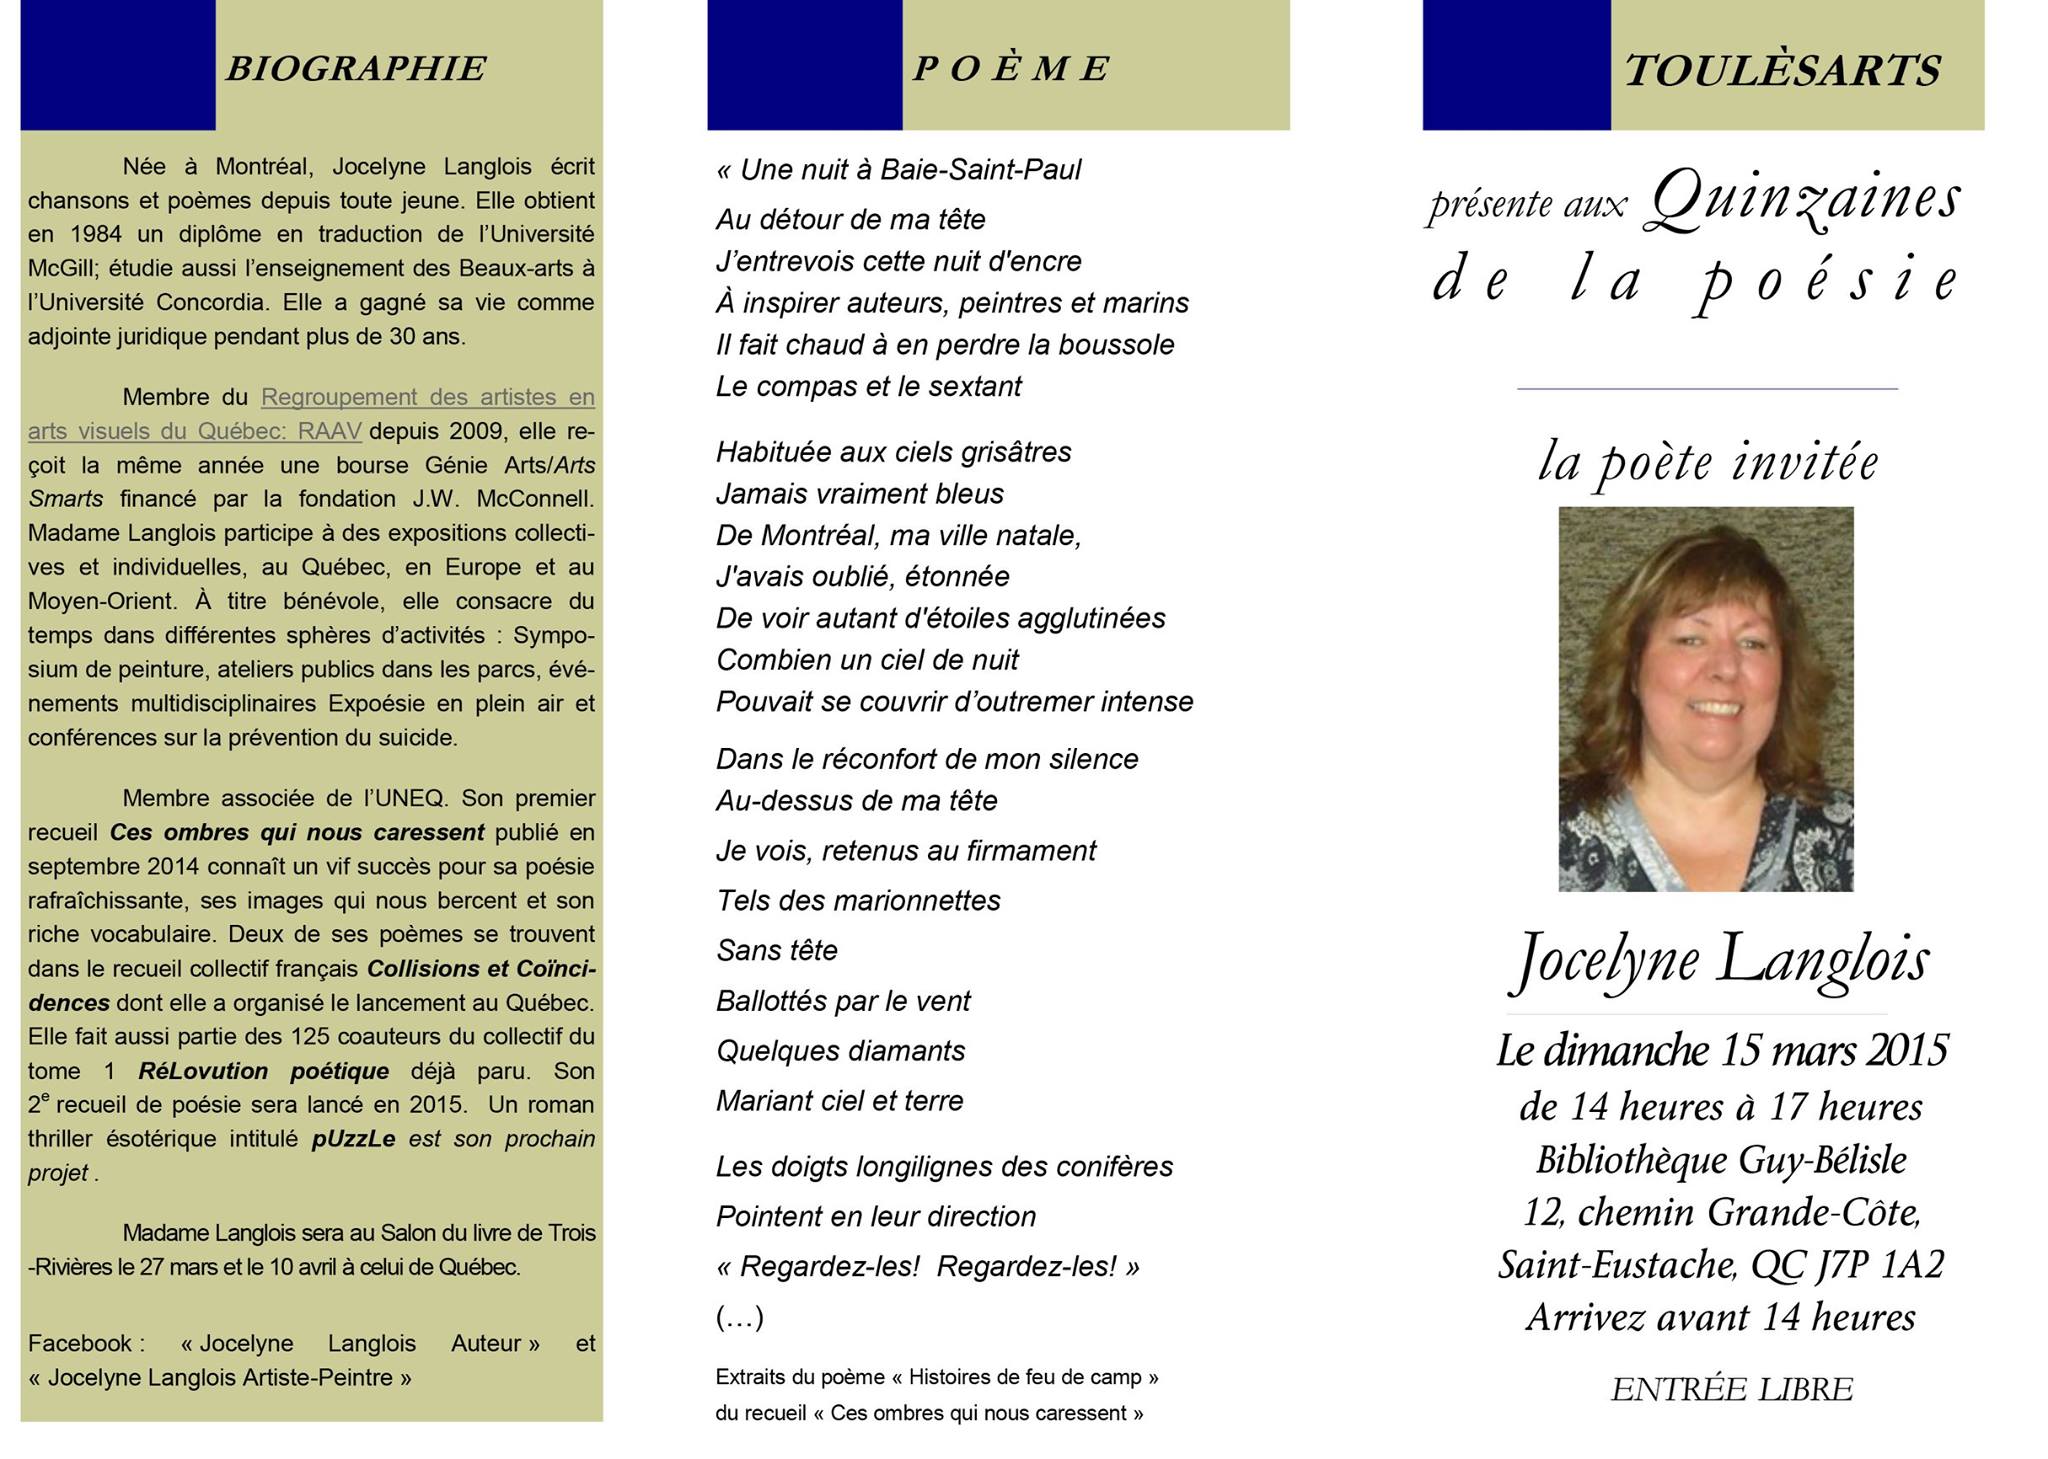 Quinzaine de la poésie - Poète invitée : Jocelyne Langlois